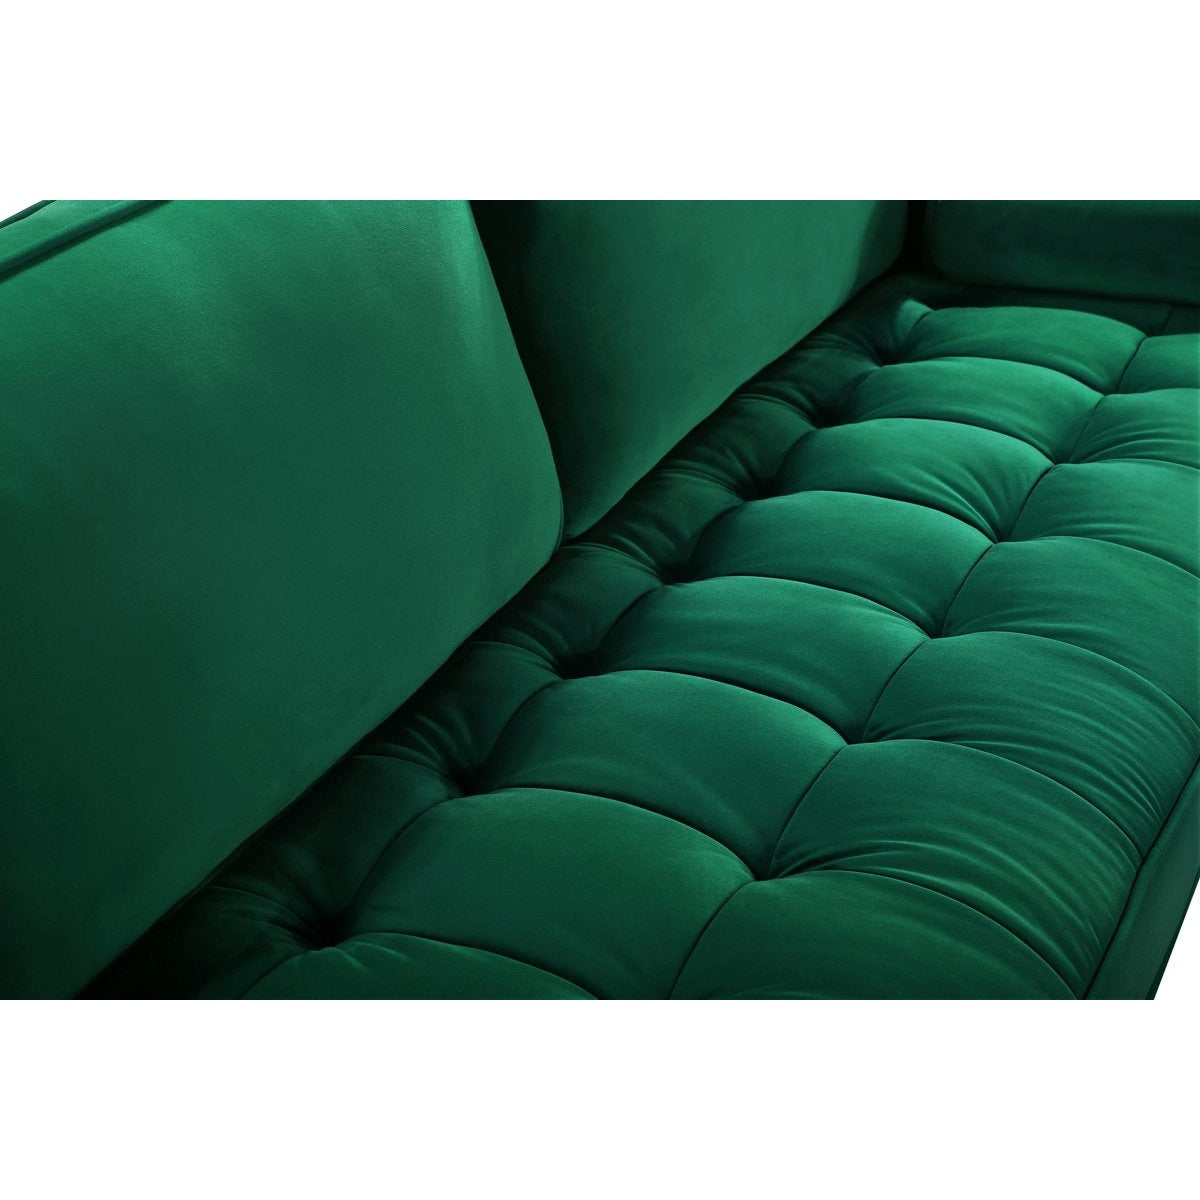 Meridian Furniture Emily Green Velvet Chair-Minimal & Modern